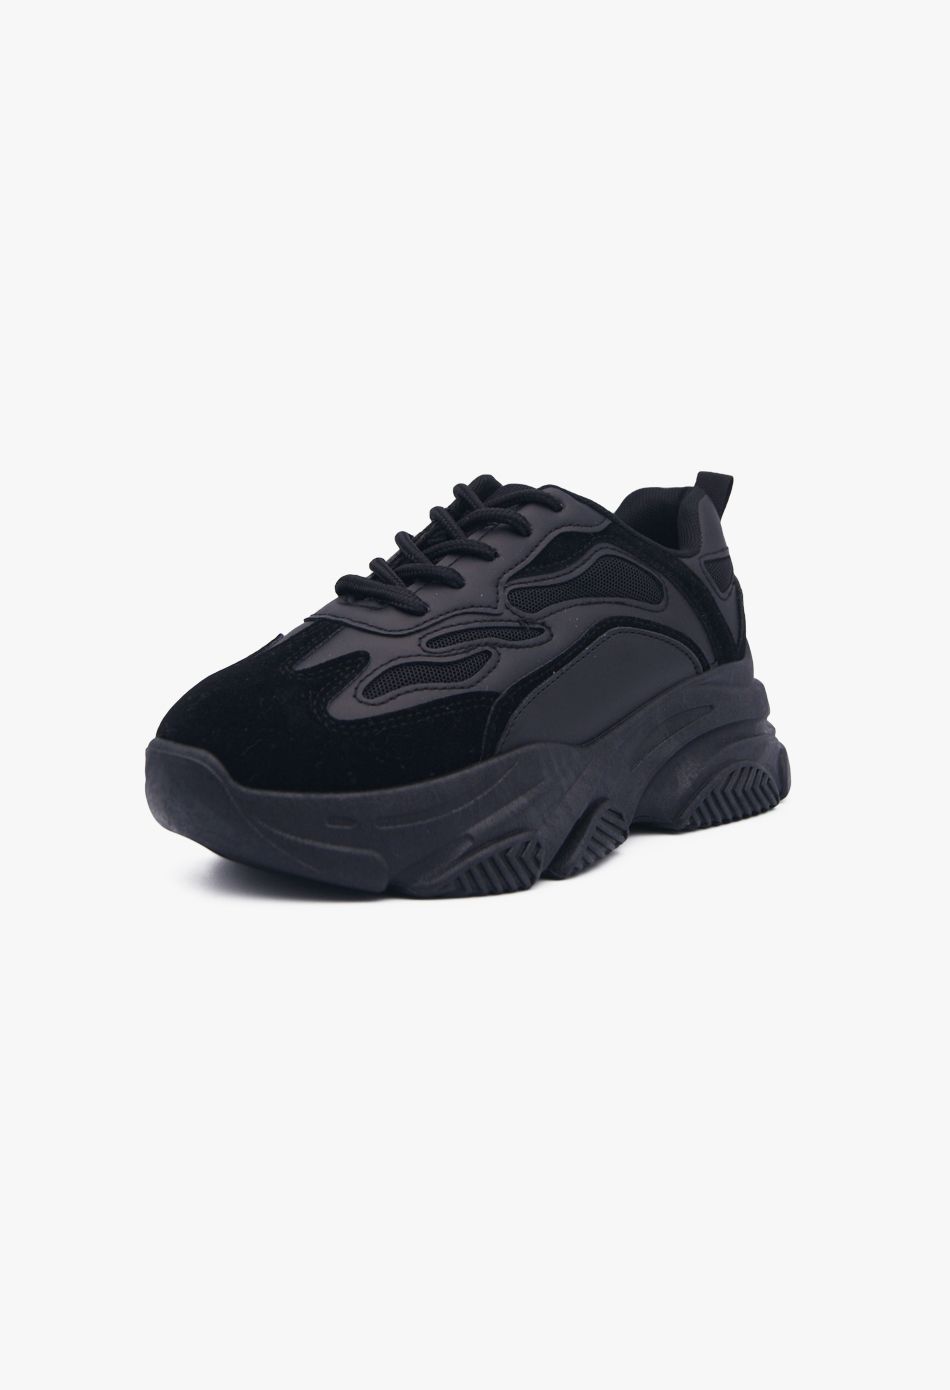 Γυναικεία Ultra Sole Chunky Sneakers Μαύρο / LY556-black Γυναικεία Αθλητικά και Sneakers joya.gr